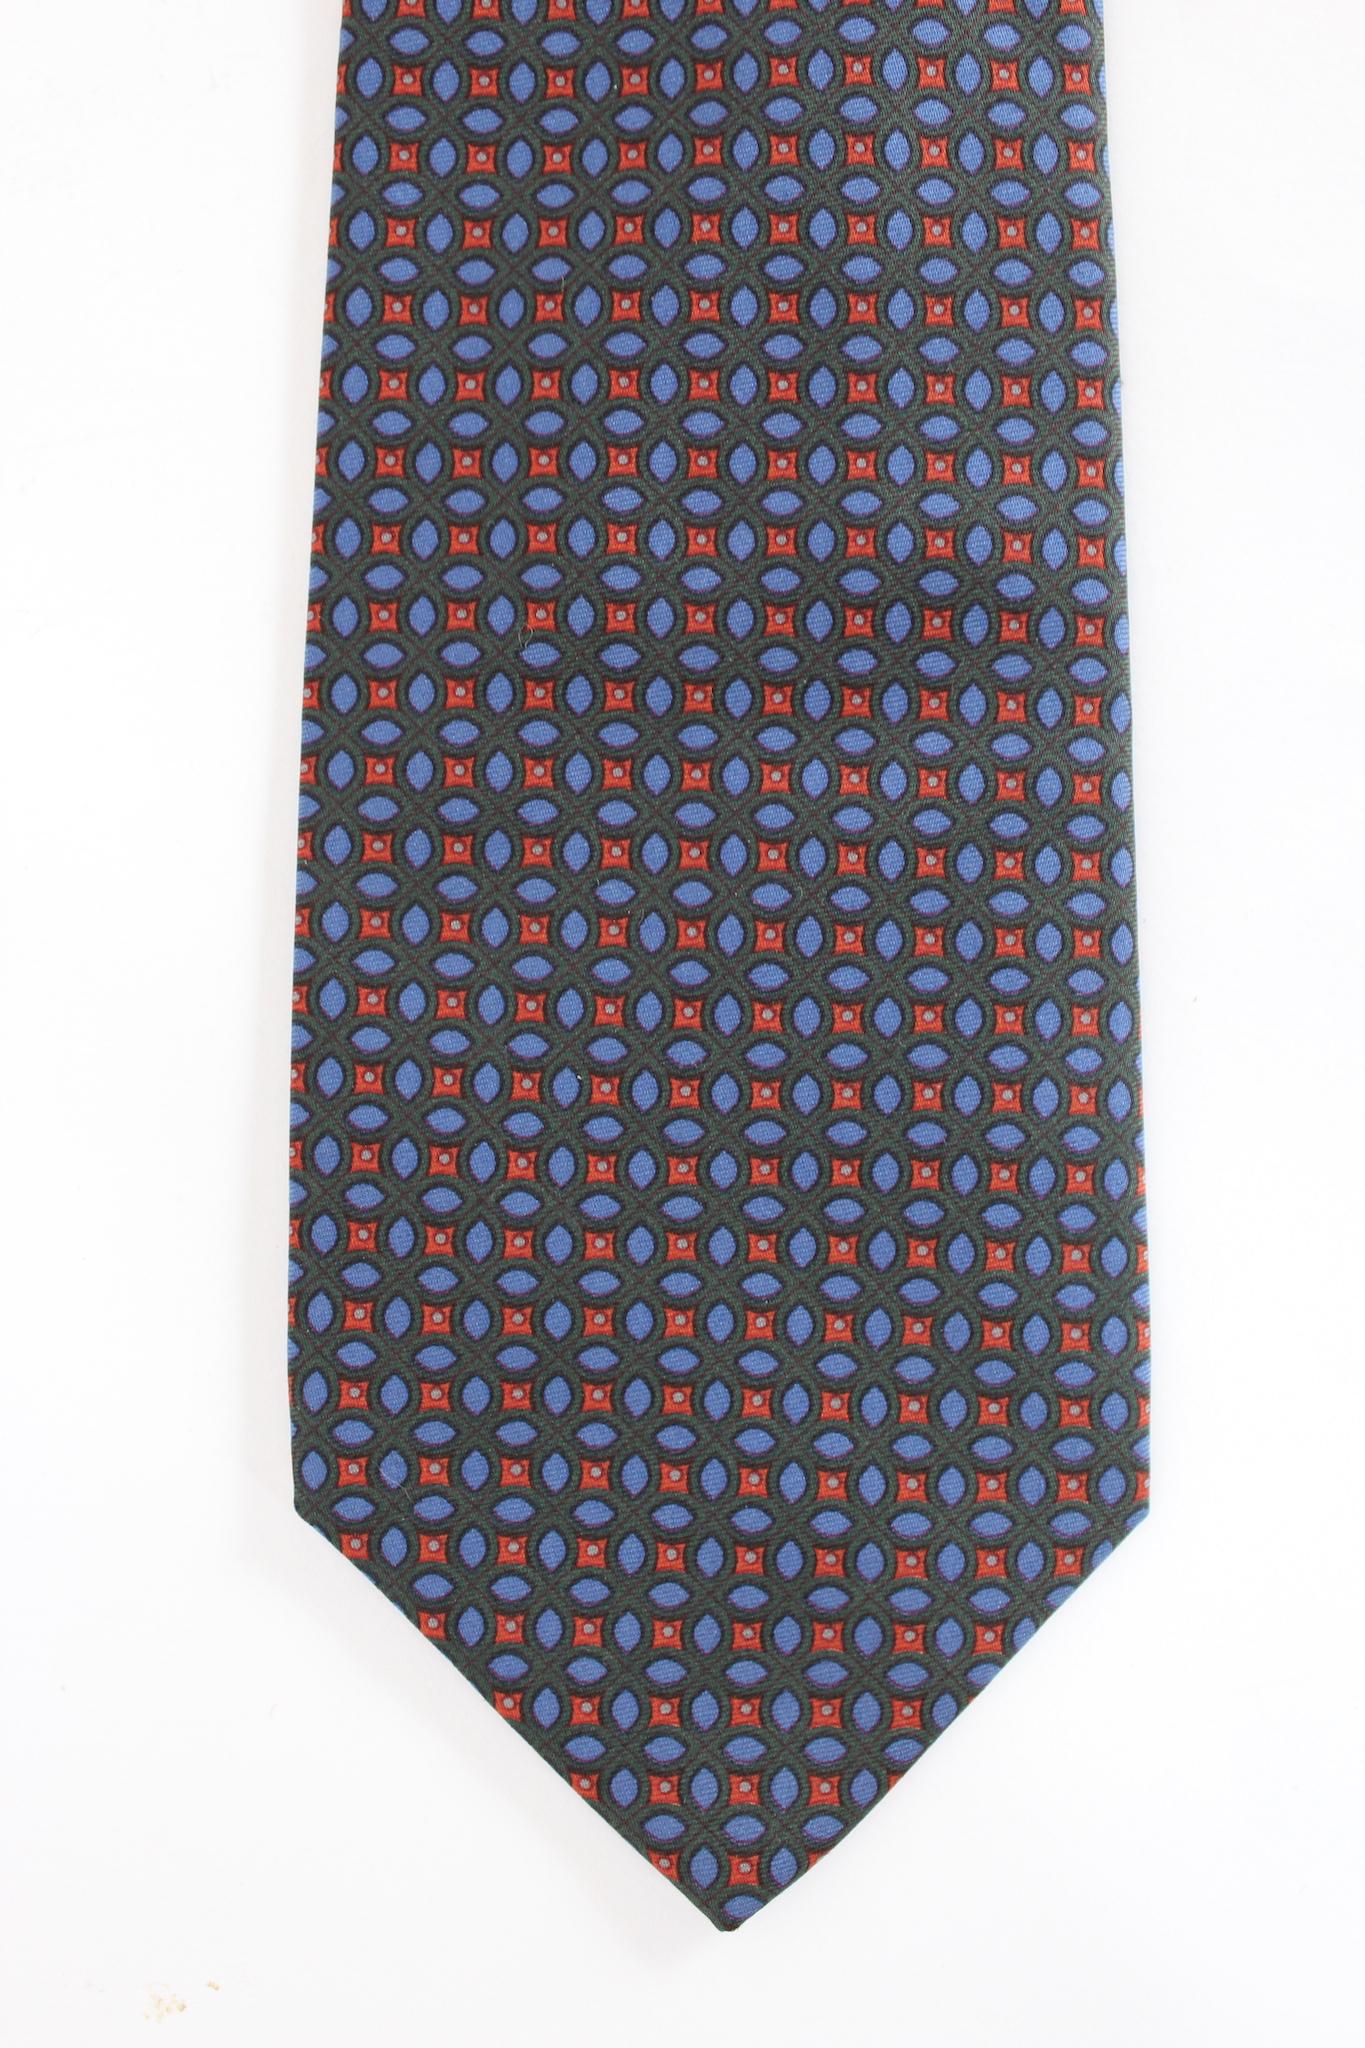 Etro 90er Jahre Vintage klassische Krawatte. Grüne, blaue und rote Farbe mit geometrischen Mustern, 100% Seidenstoff. Hergestellt in Italien.

Länge: 140 cm
Breite: 9 cm